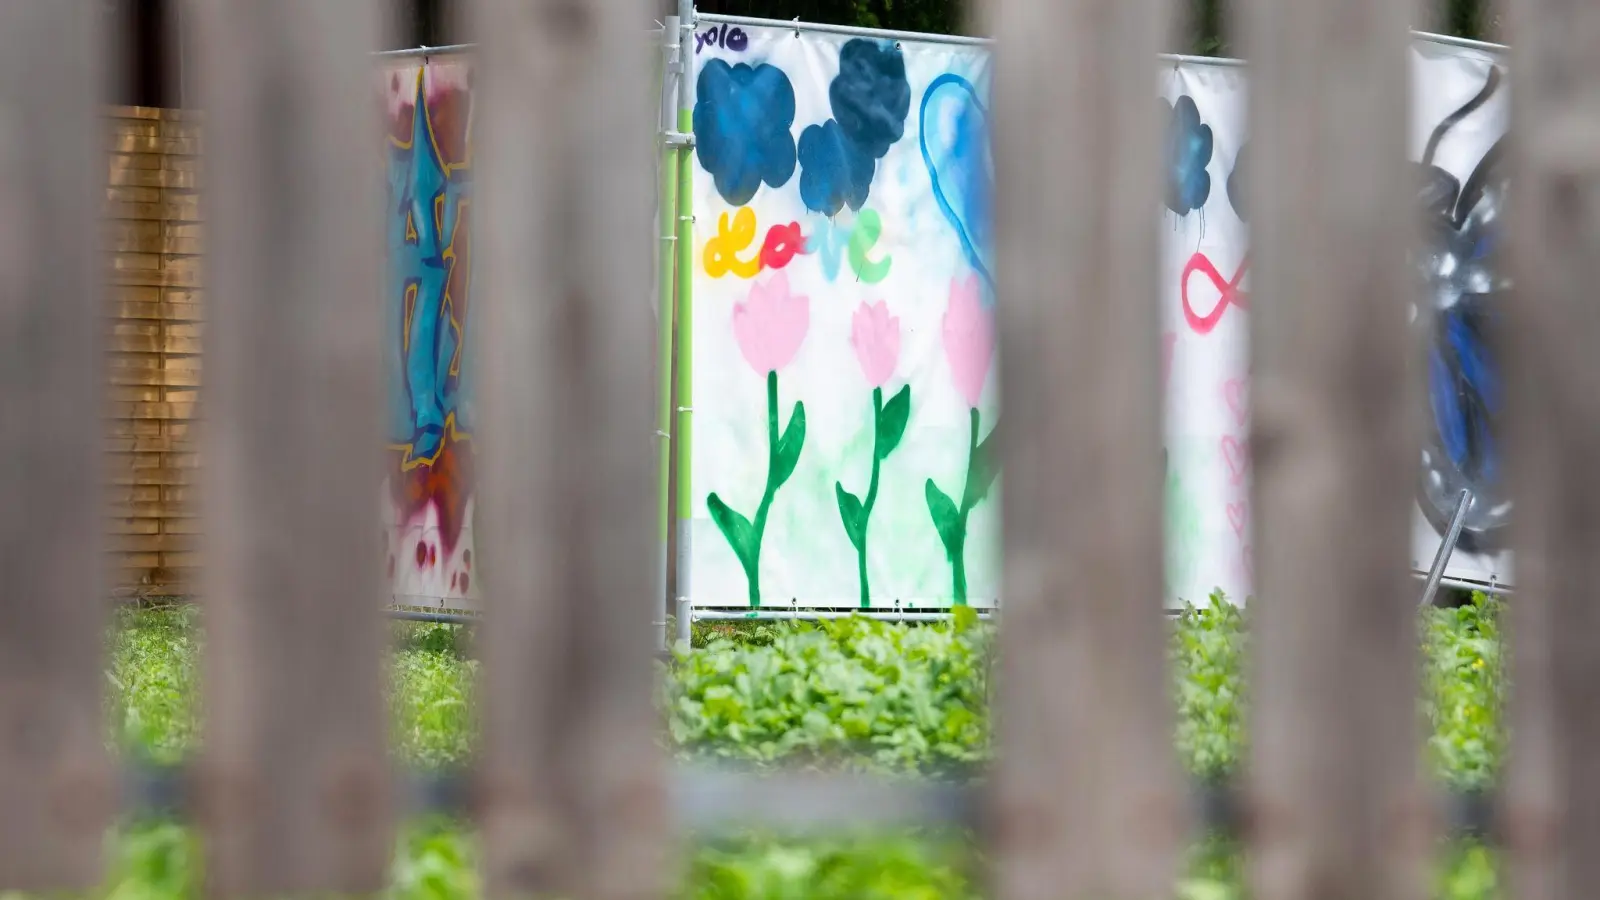 Am Rand einer Brachfläche hängen von Kindern gestaltete Plakate an Bauzäunen. An dieser Stelle stand das Haus, vor dem der Messerangriff auf zwei Schülerinnen stattfand. (Foto: Stefan Puchner/dpa)